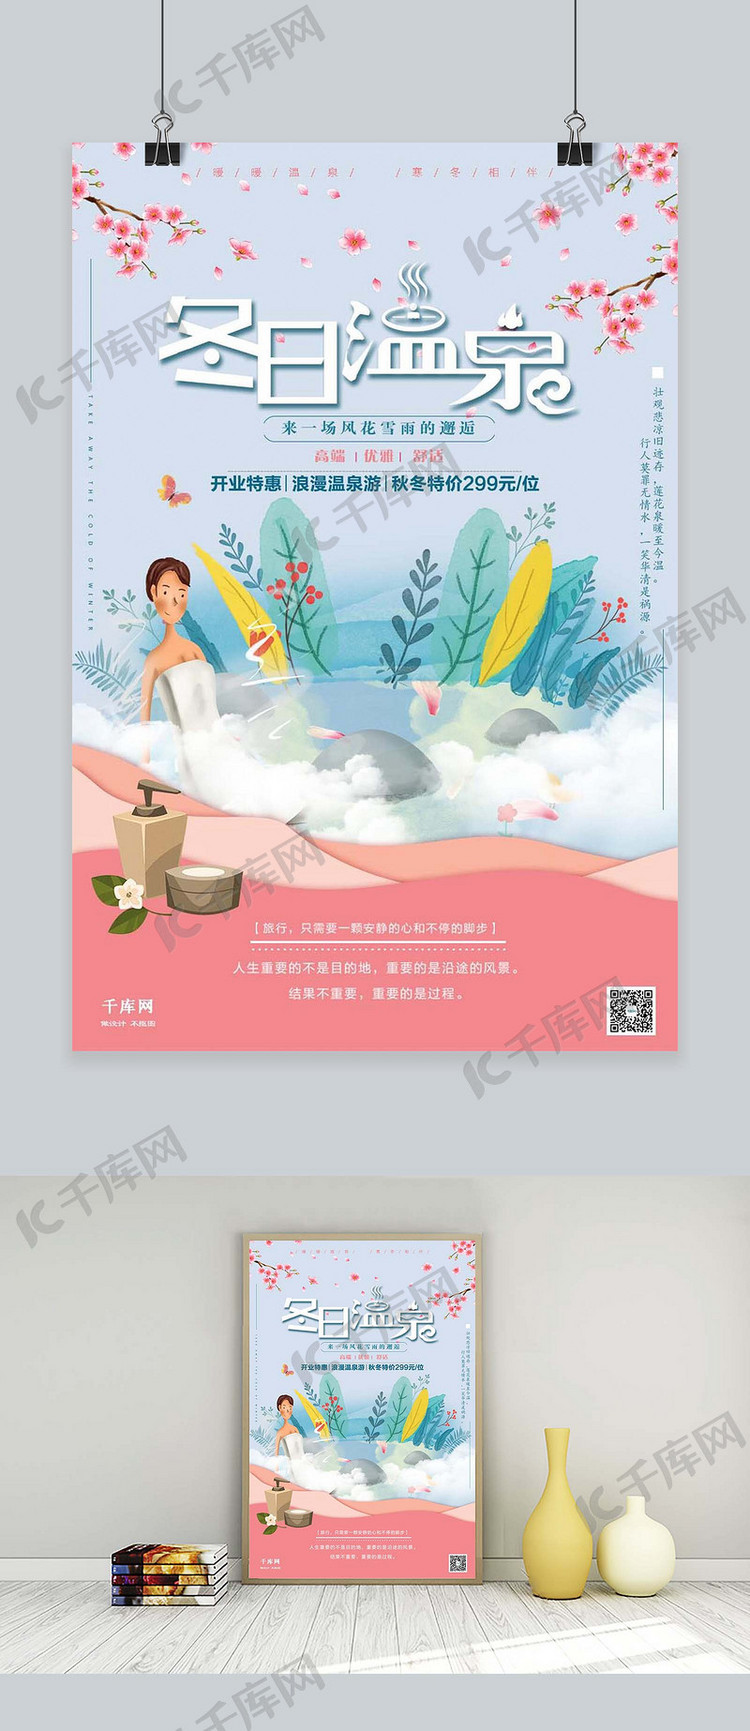 冬日温泉旅游促销寒假春节温泉旅游剪纸风格海报